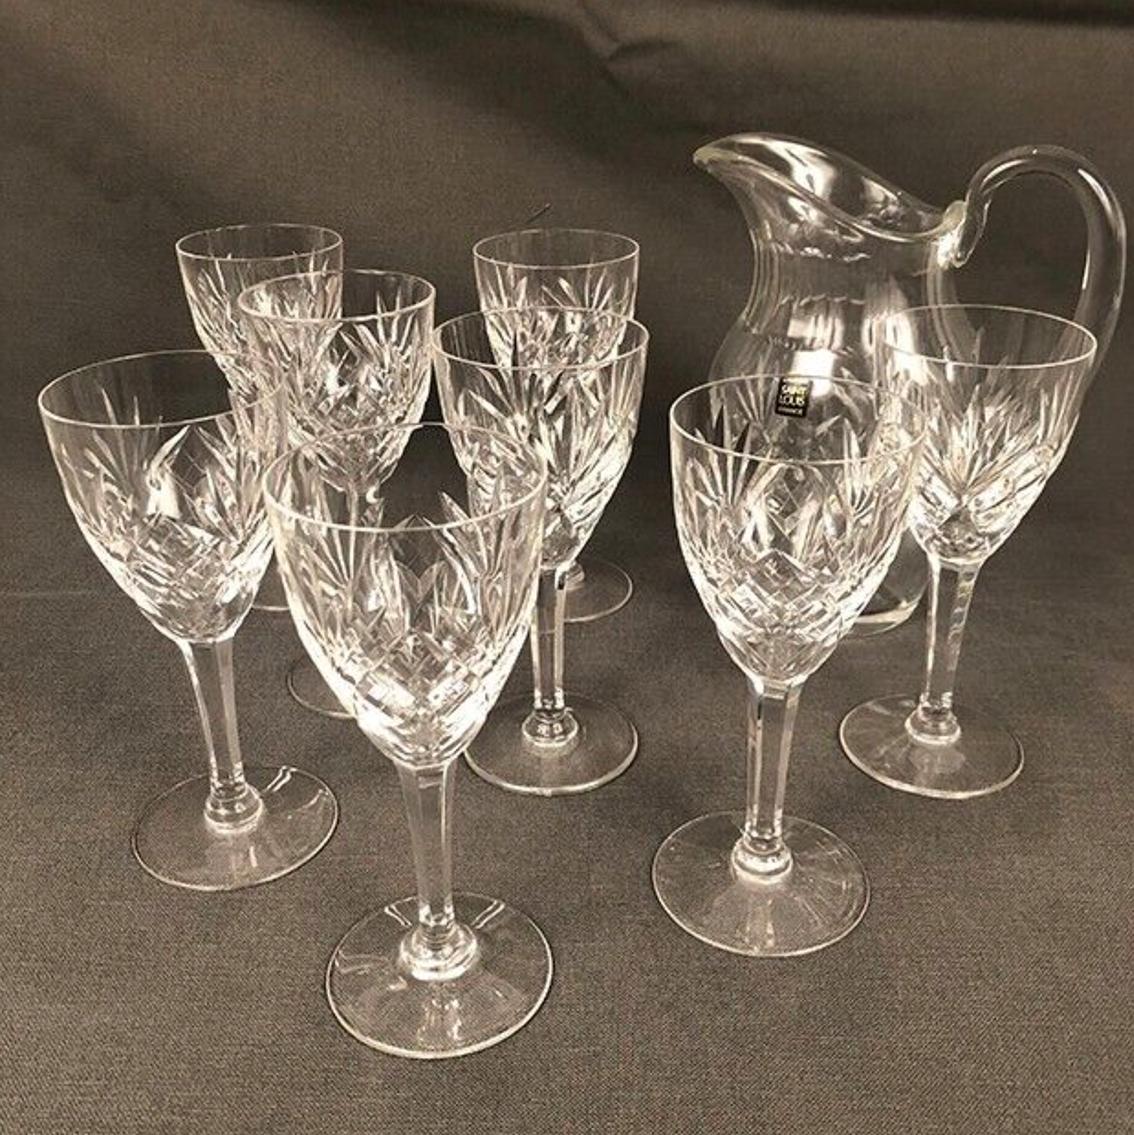 Cristal Saint-louis modèle Chantilly, broc et huit verres à eau
1 broc à eau, hauteur 22 cm
8 verres à eau, hauteur 17,5 cm et diamètre 7,5 cm (1 ébréchure)
Le modèle Chantilly a été créé en 1958 à Saint-Louis. Sur un pied taillé en facettes